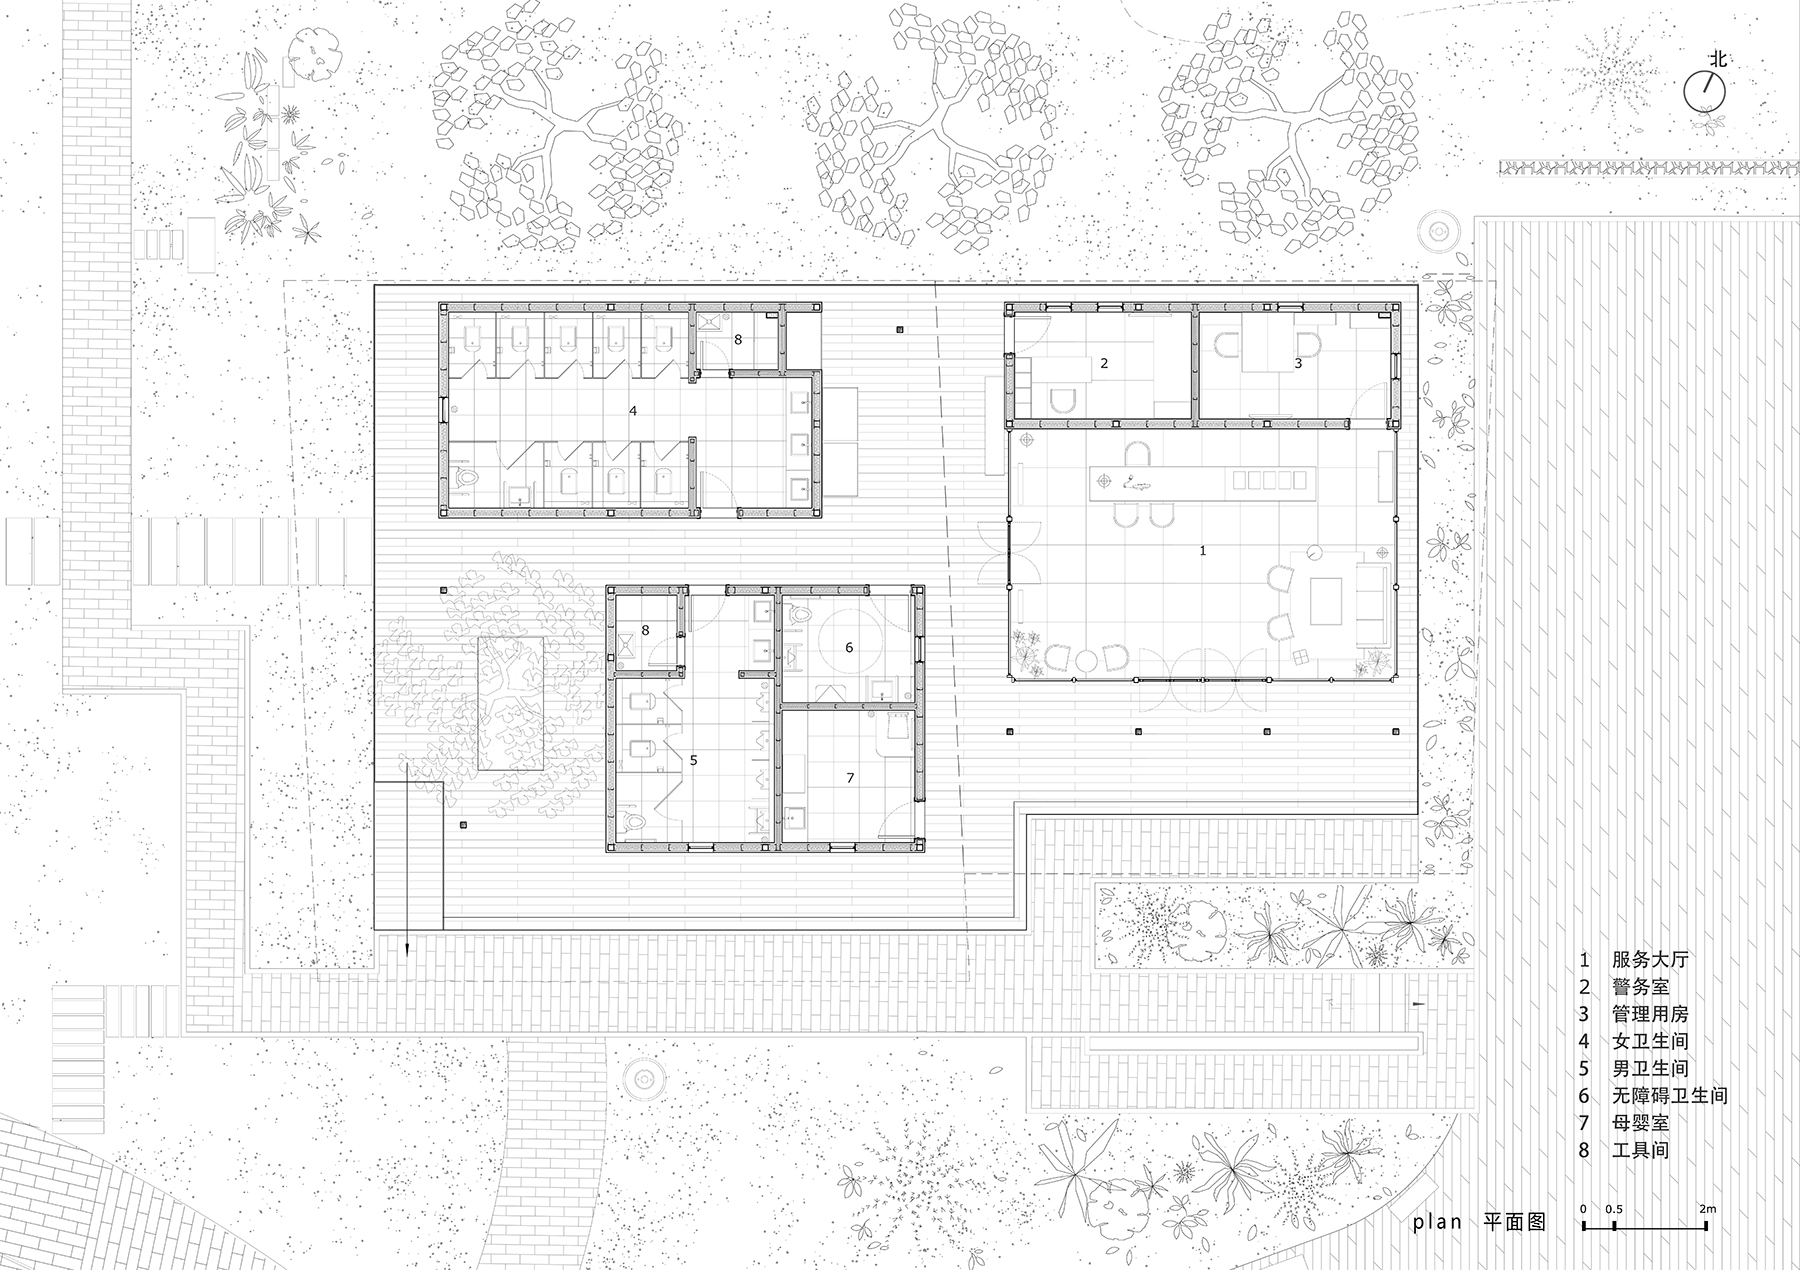 40.平面图Floor plan ©尌林建筑.jpg